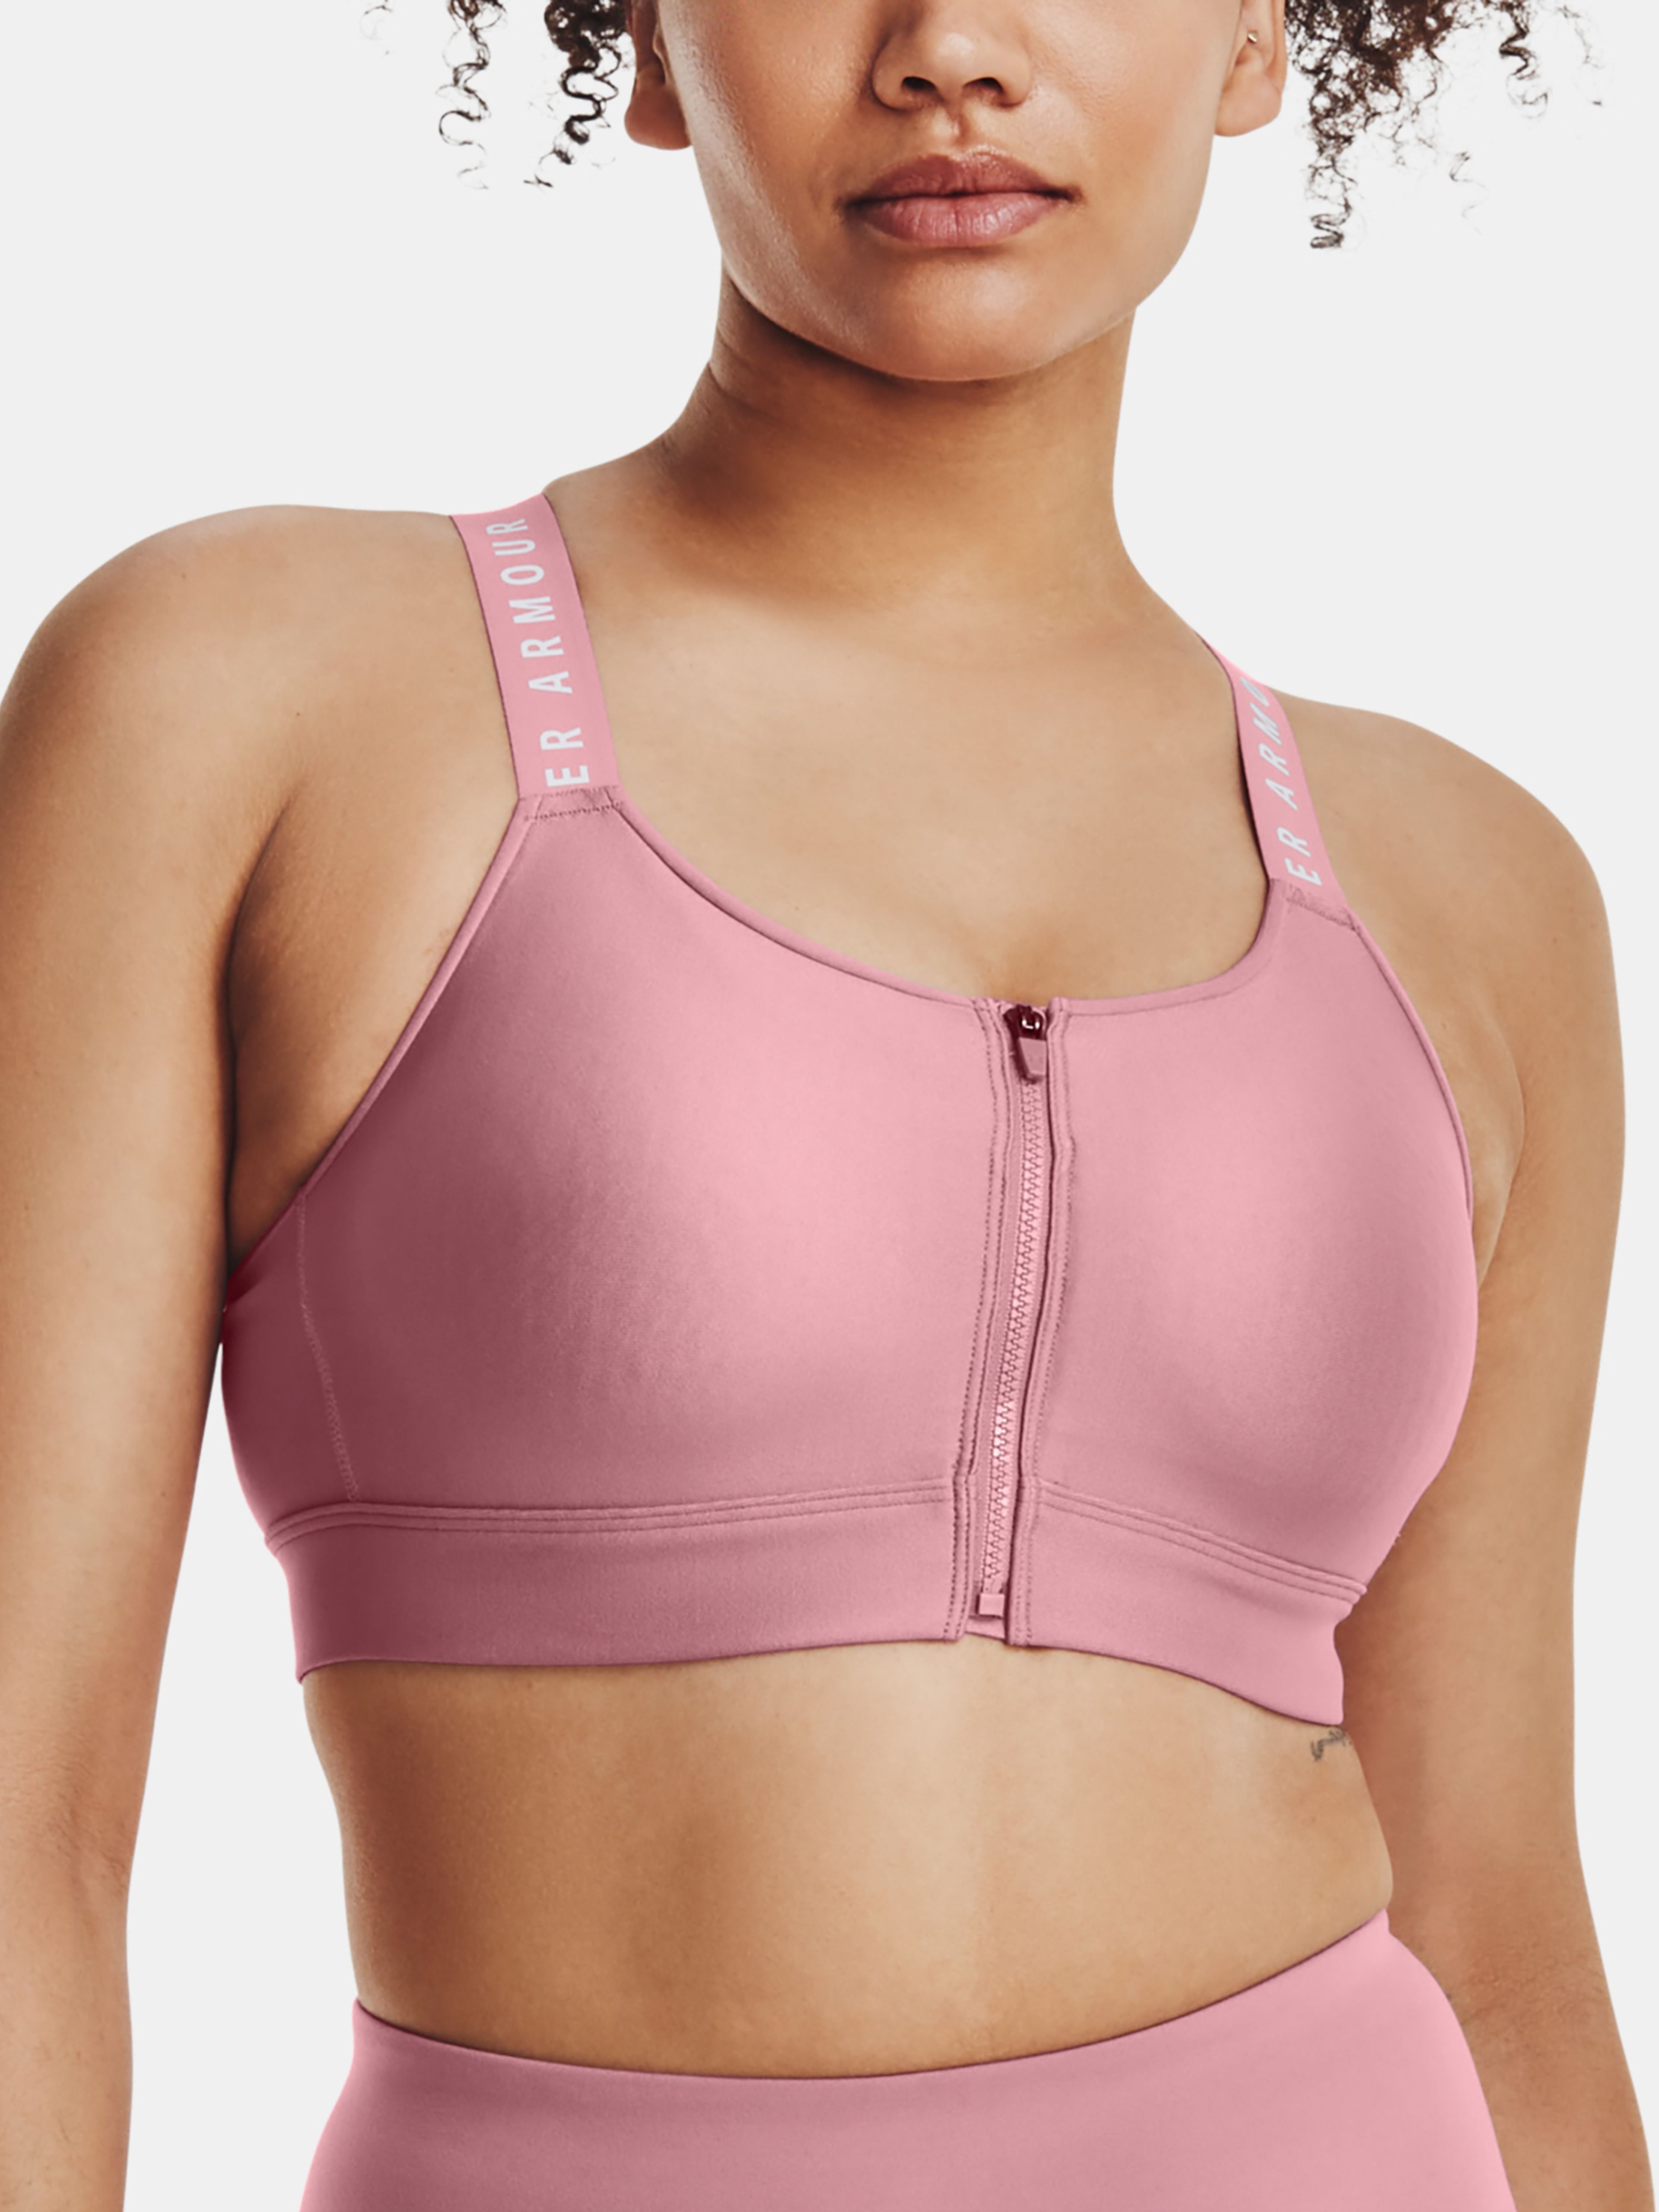  UA Infinity High Bra, Pink - sports bra - UNDER ARMOUR -  44.19 € - outdoorové oblečení a vybavení shop